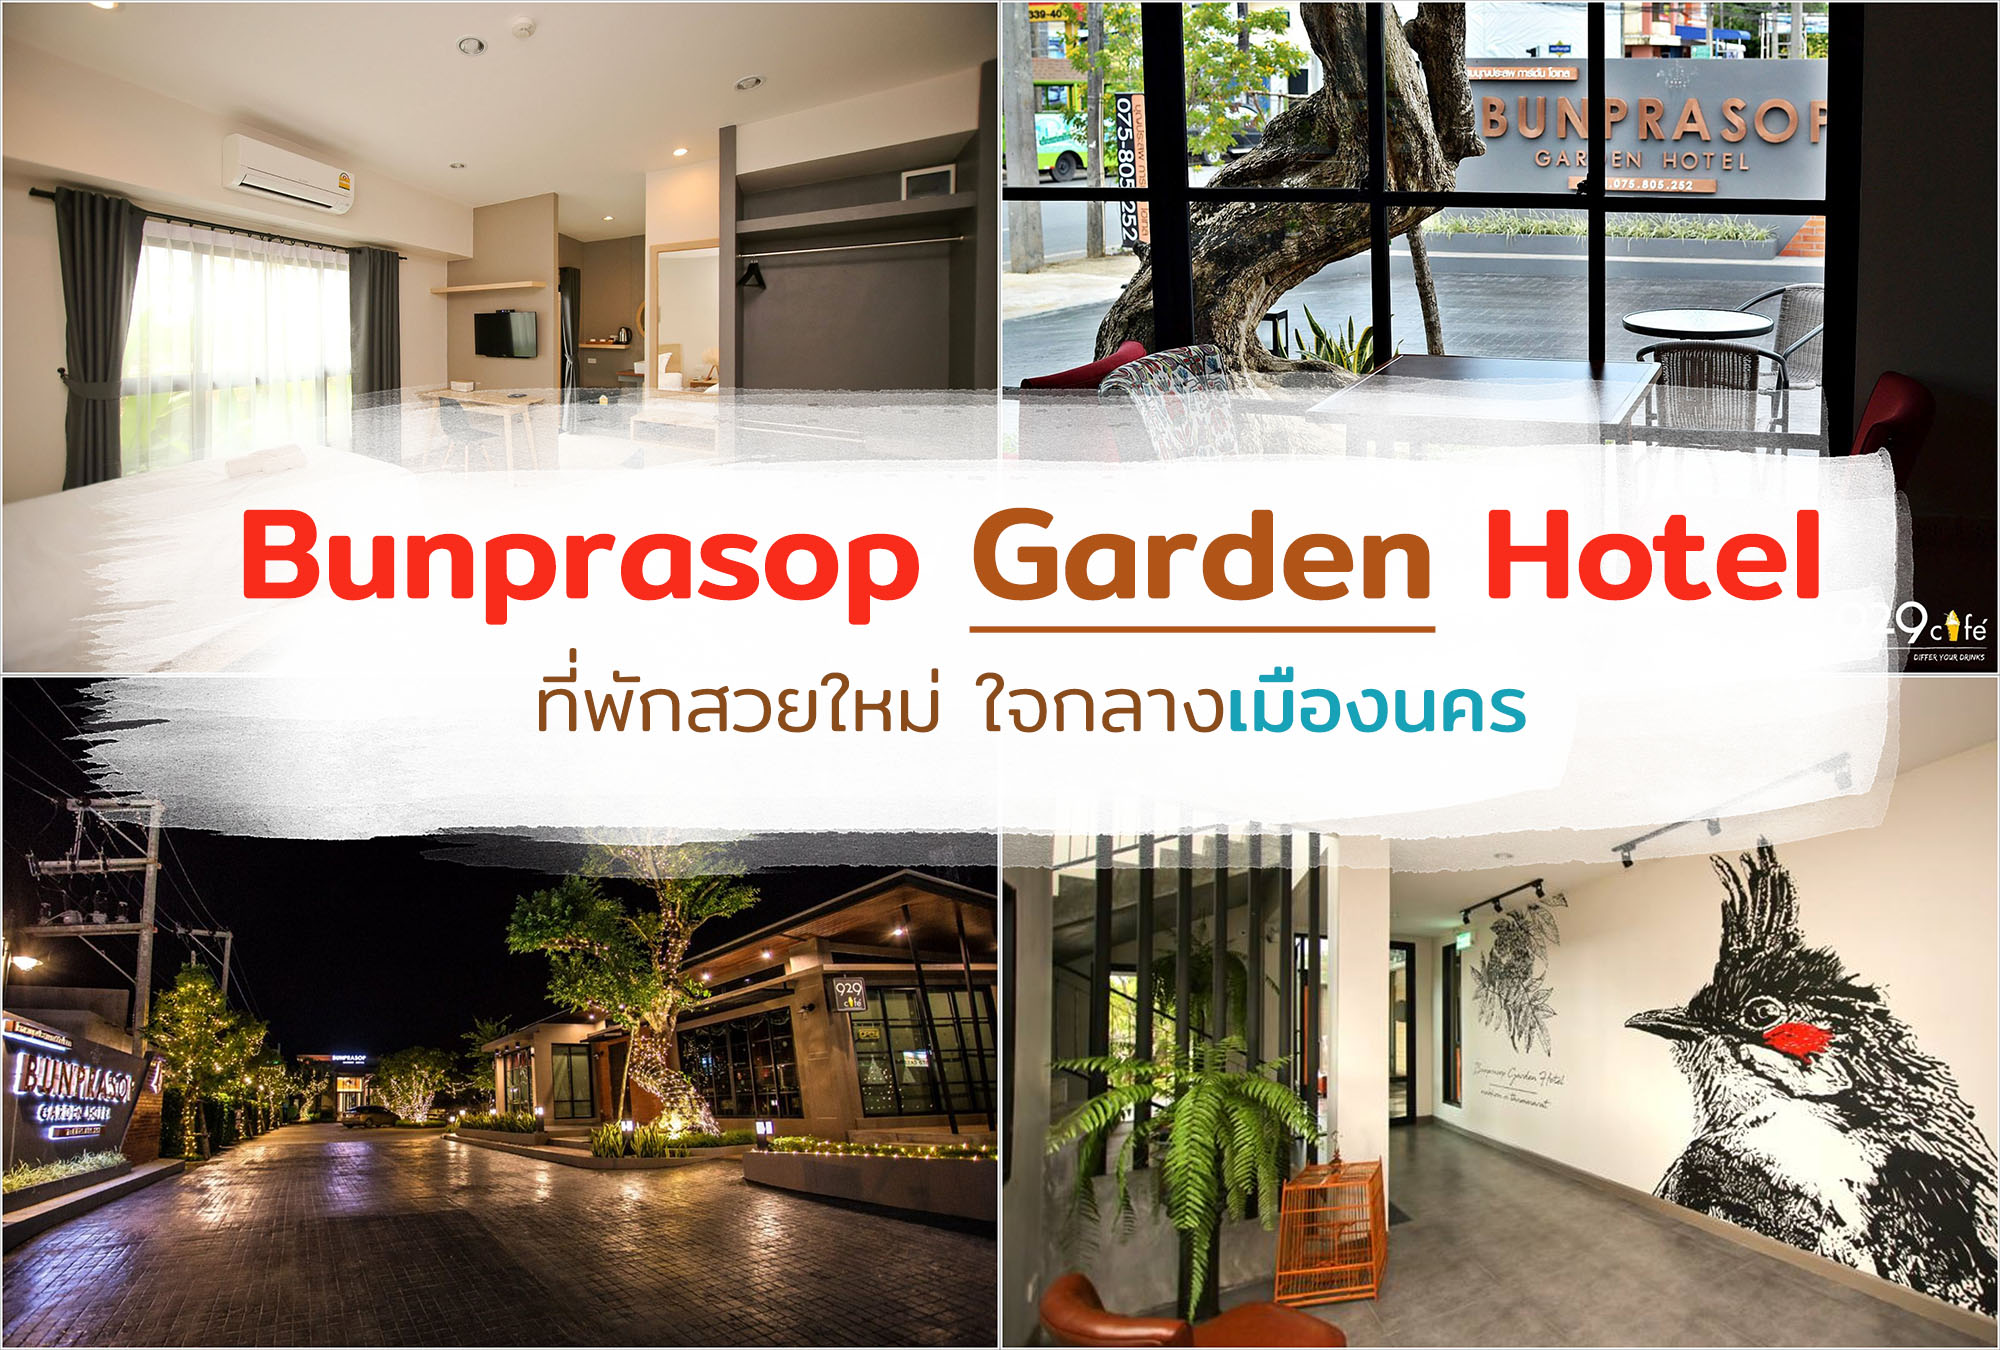 Bunprasop Garden Hotel ที่พักสวยใหม่ ใจกลางเมืองนคร - รีวิว นครศรีดีย์